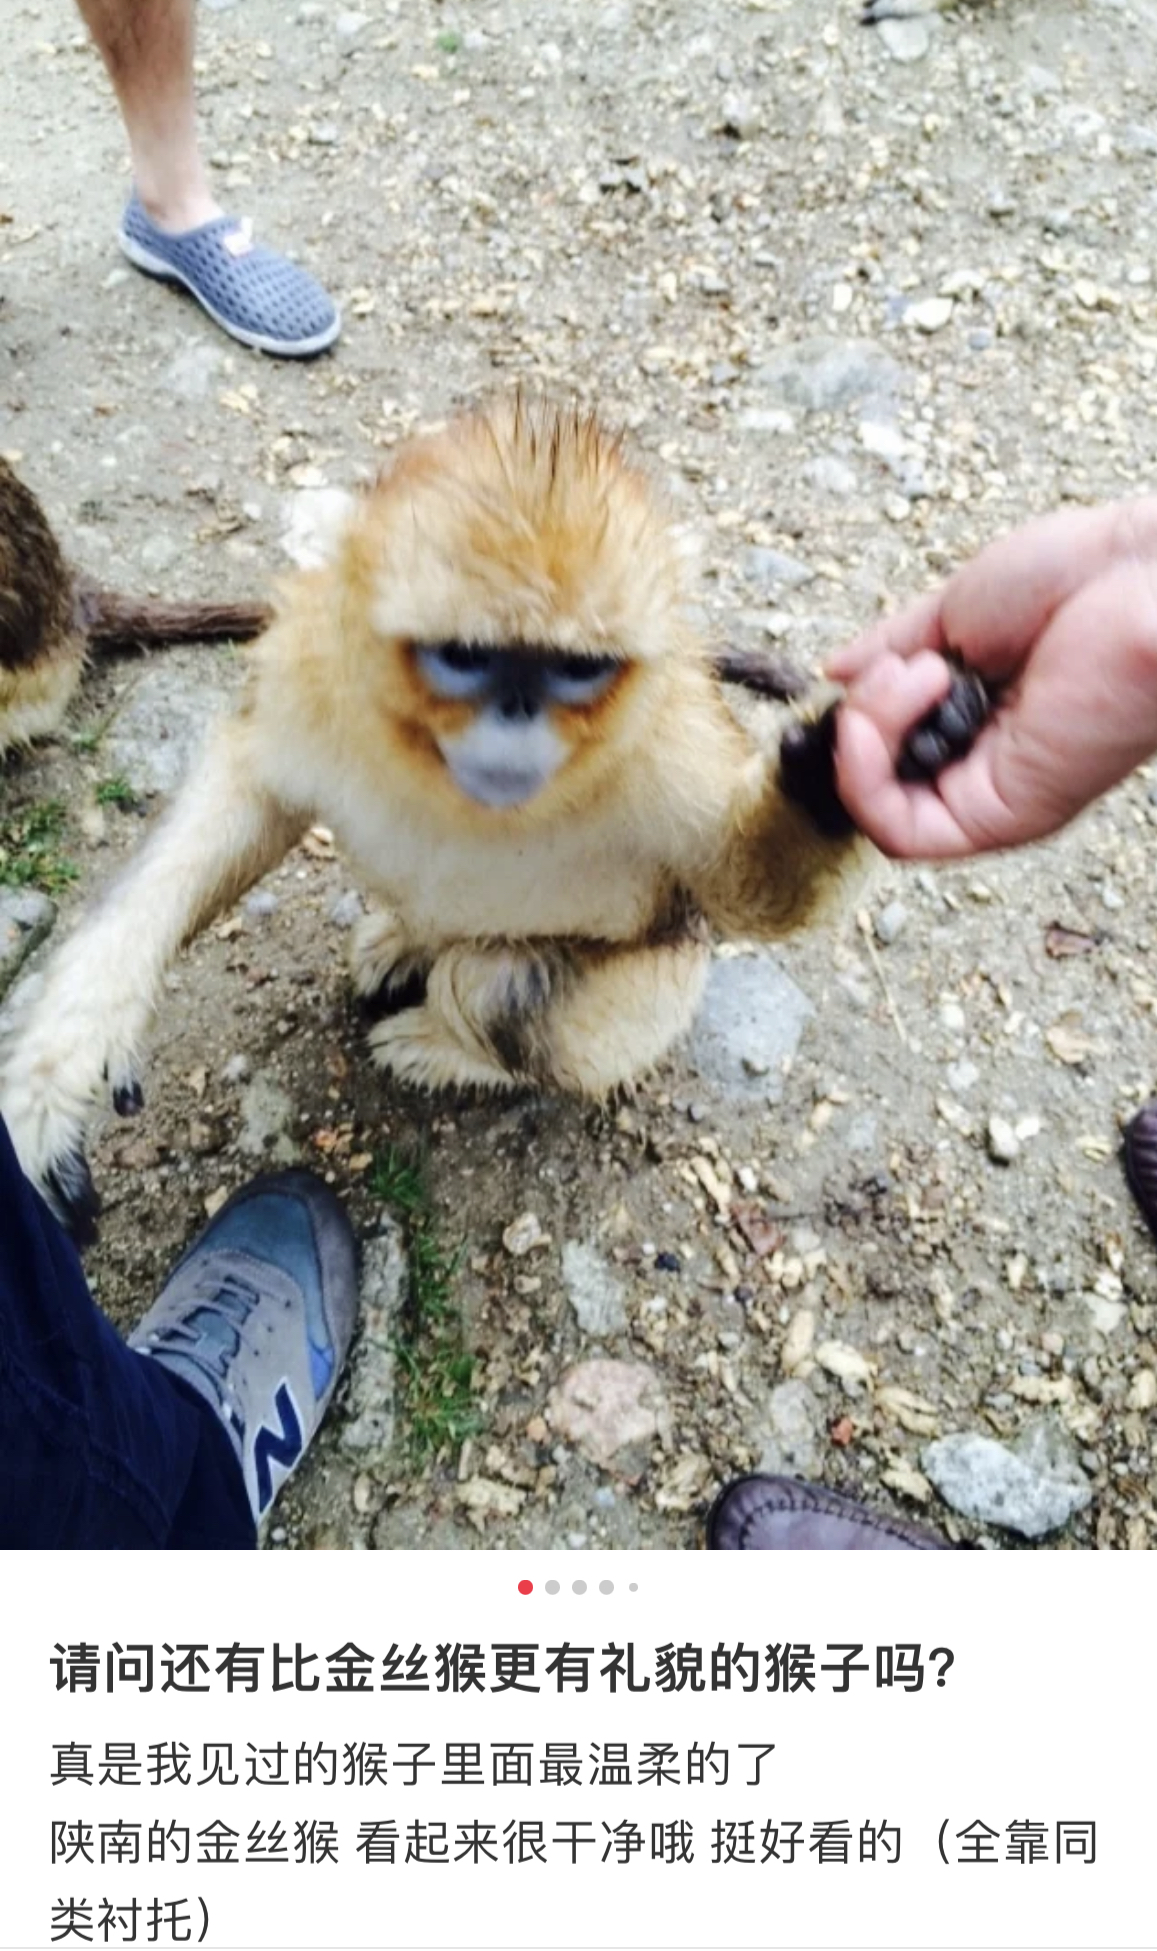 一位博主发布的与金丝猴握手的照片